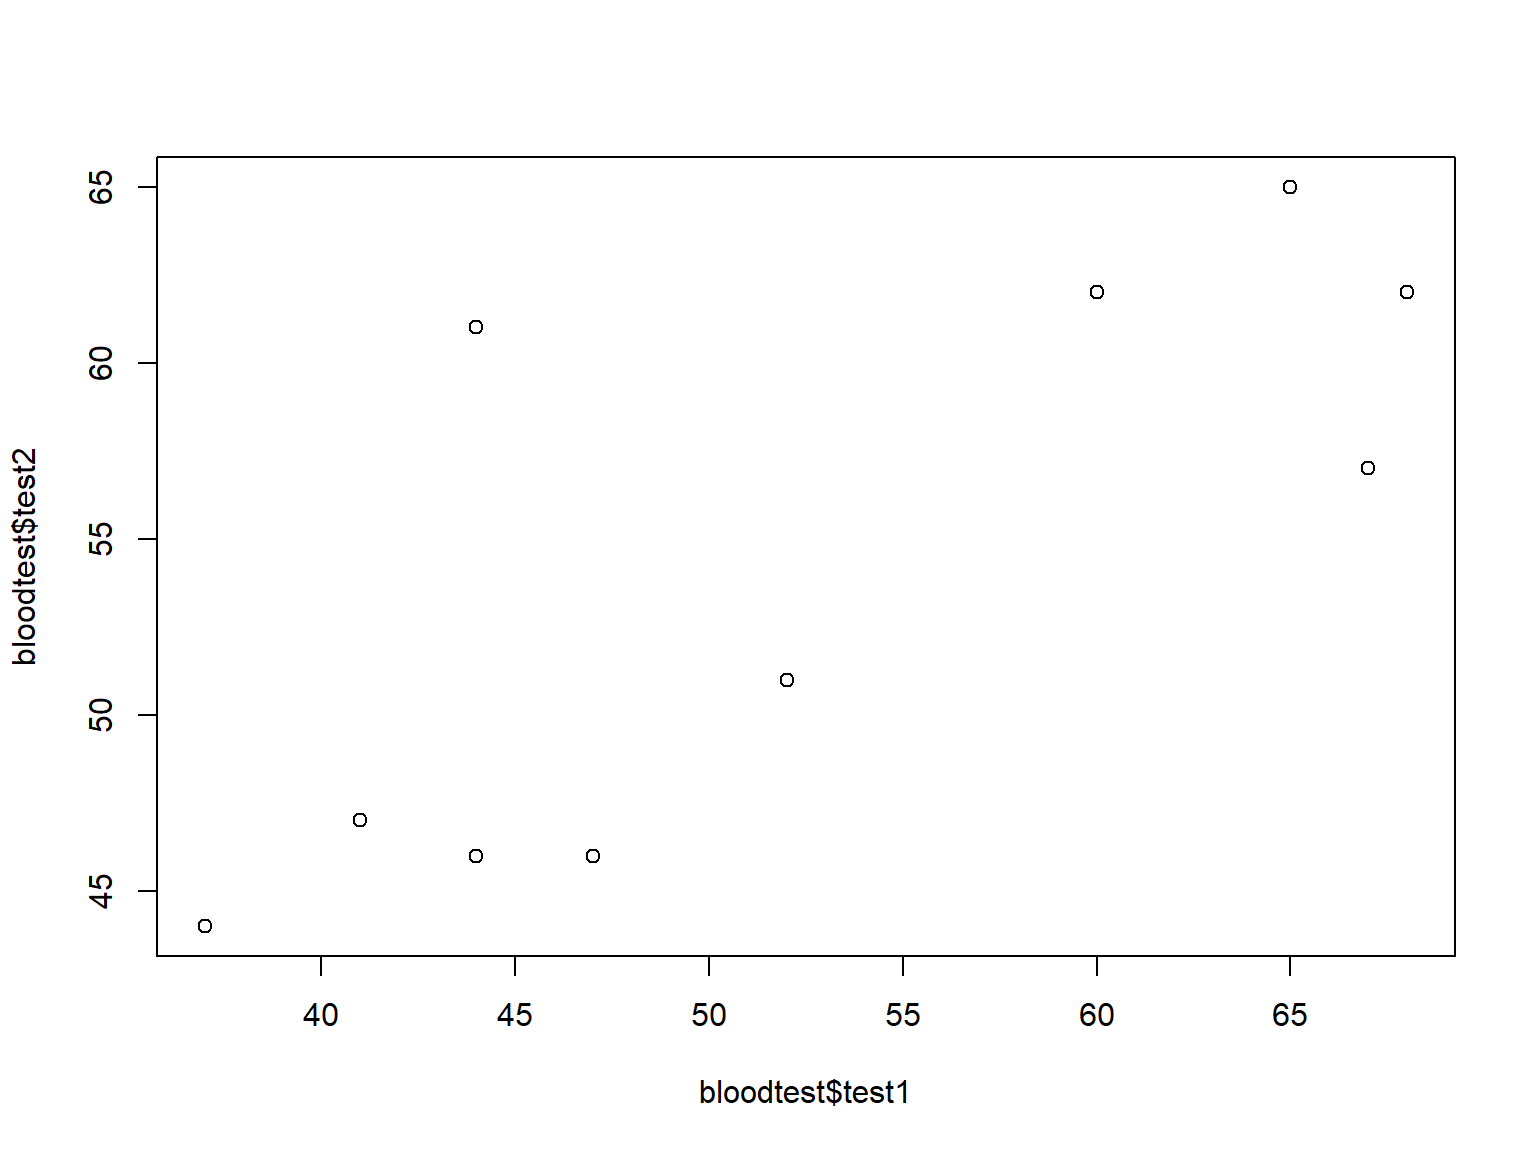 Fig 1. scatterplot of test1 vs test2